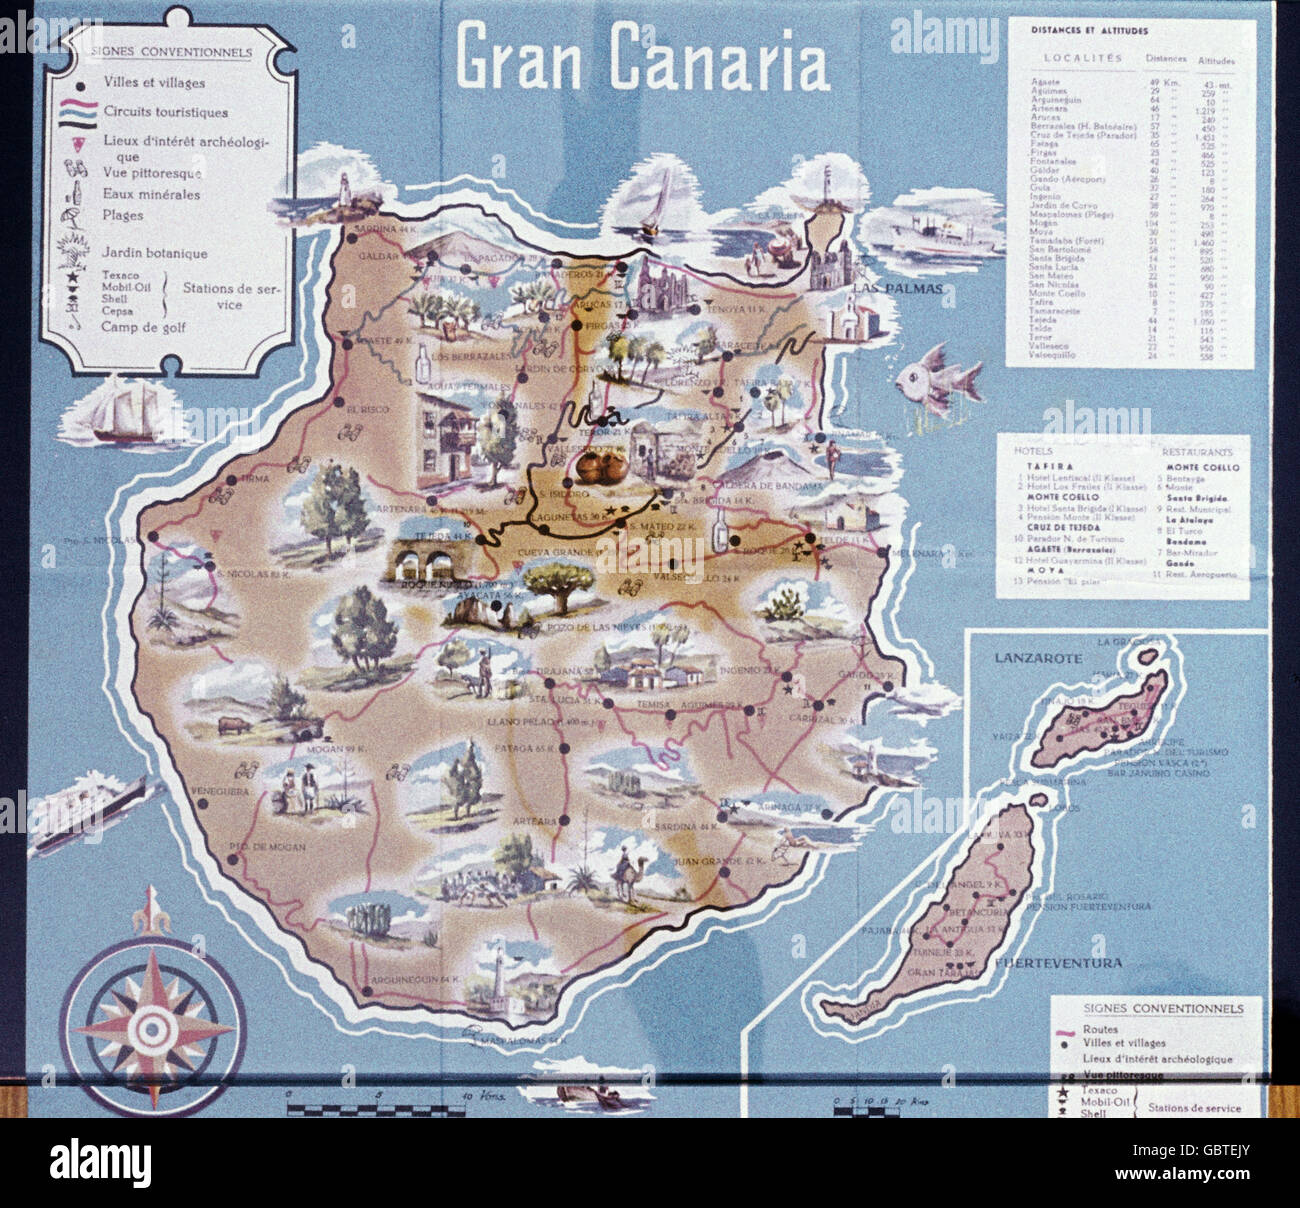 Geografia / viaggio, Spagna, Isole Canarie, Gran Canaria, mappa topografica, 1958, diritti aggiuntivi-clearences-non disponibile Foto Stock